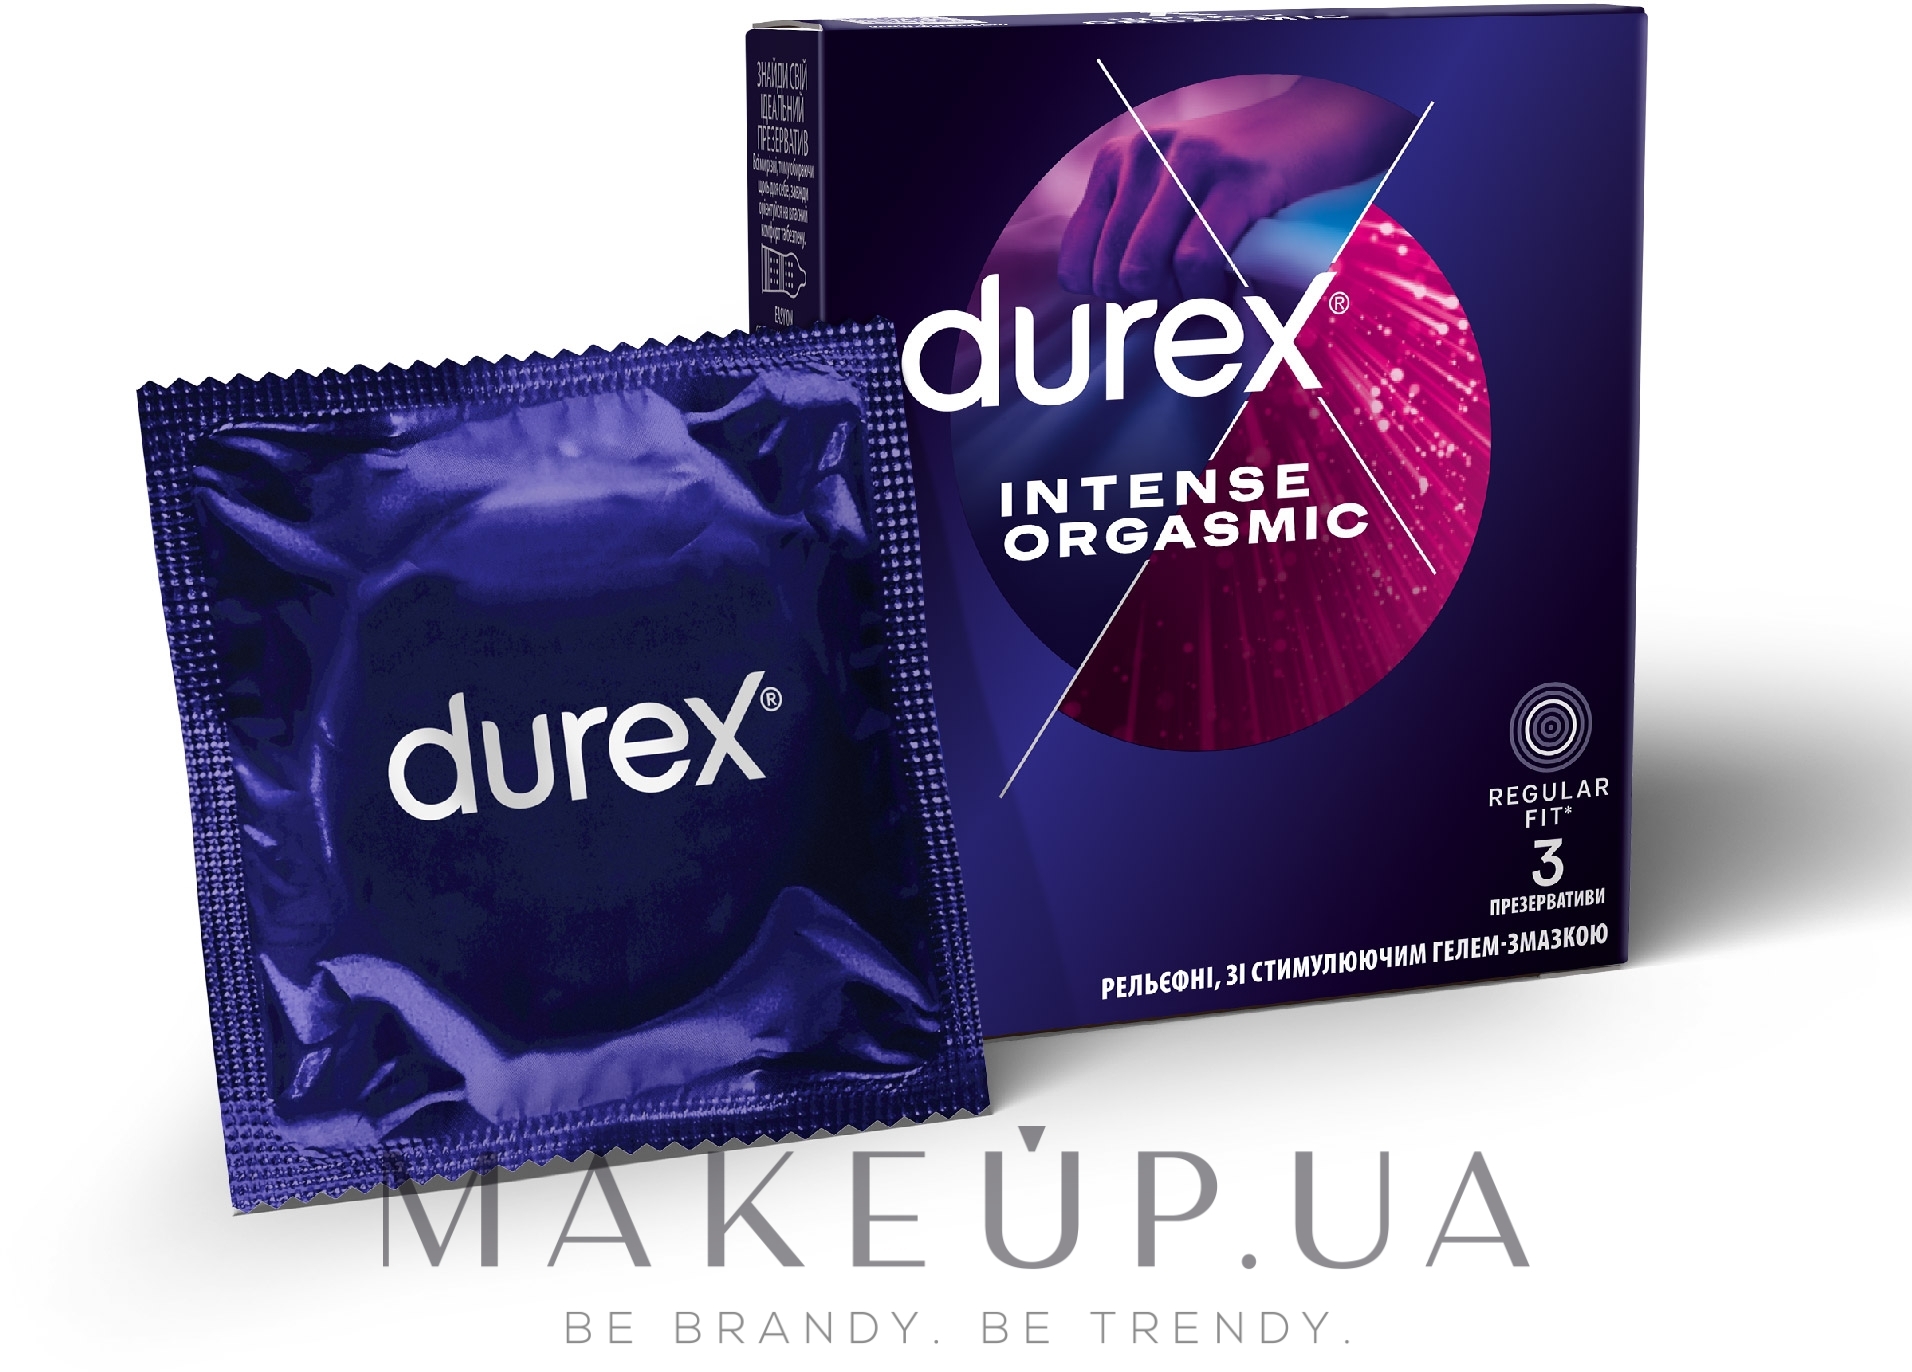 Презервативы латексные с силиконовой смазкой рельефные, со стимулирующим гелем-смазкой, 3 шт - Durex Intense Orgasmic — фото 3шт